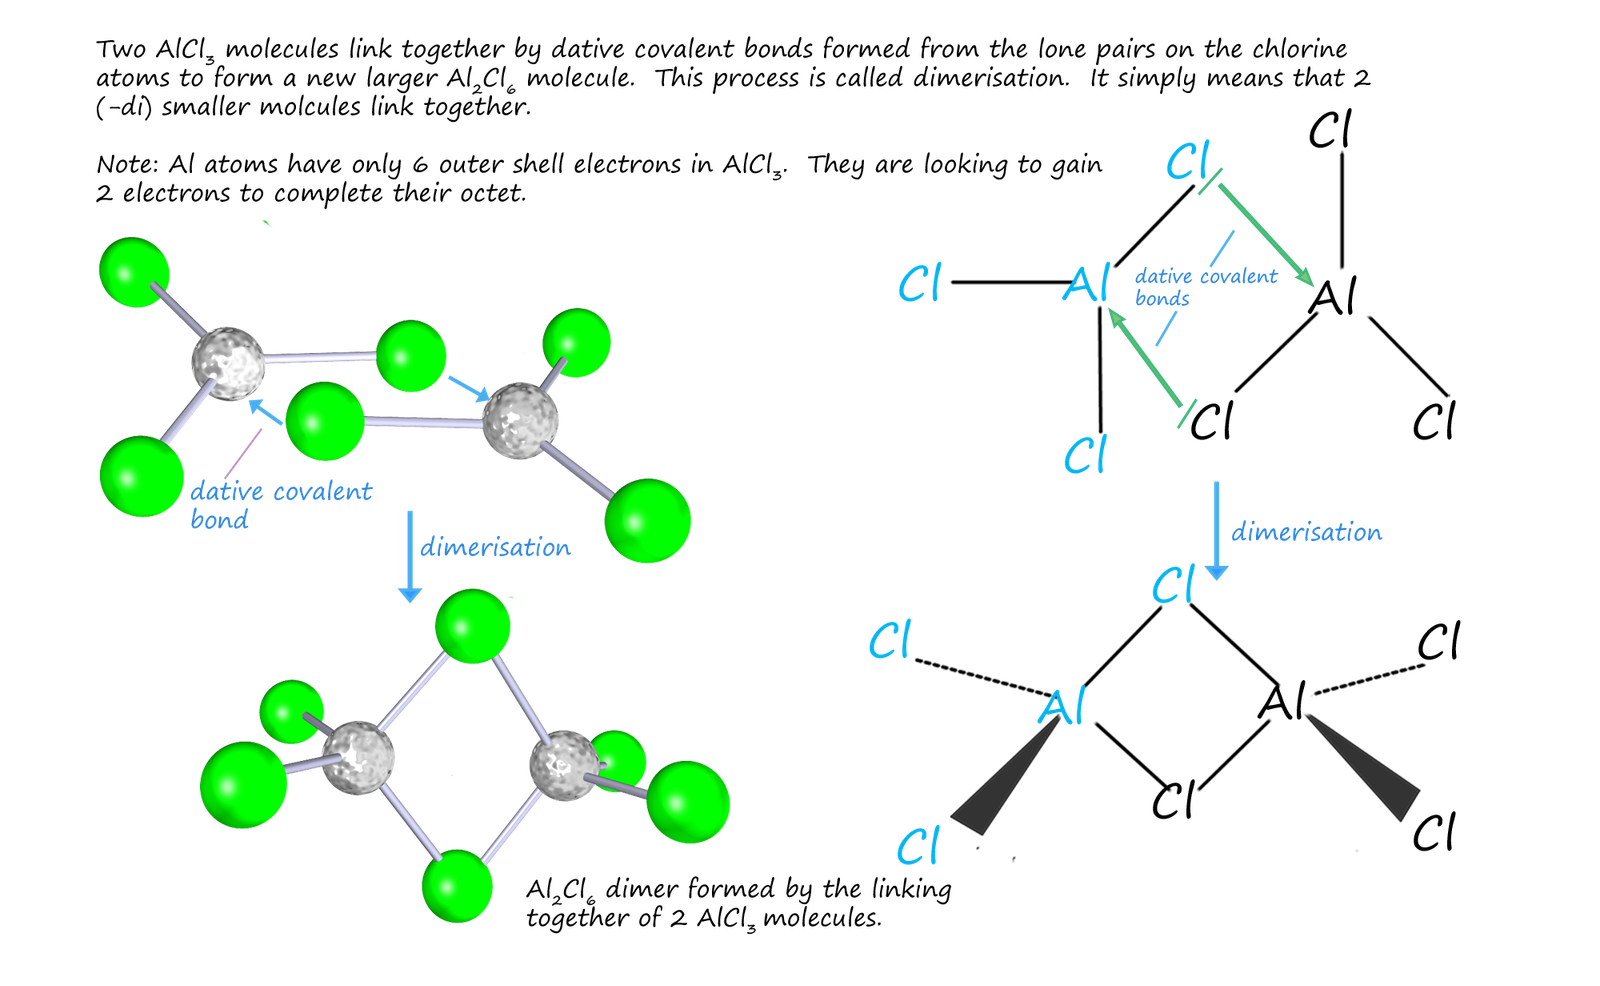 diagram showing the dimerisation of AlCl3 molecules